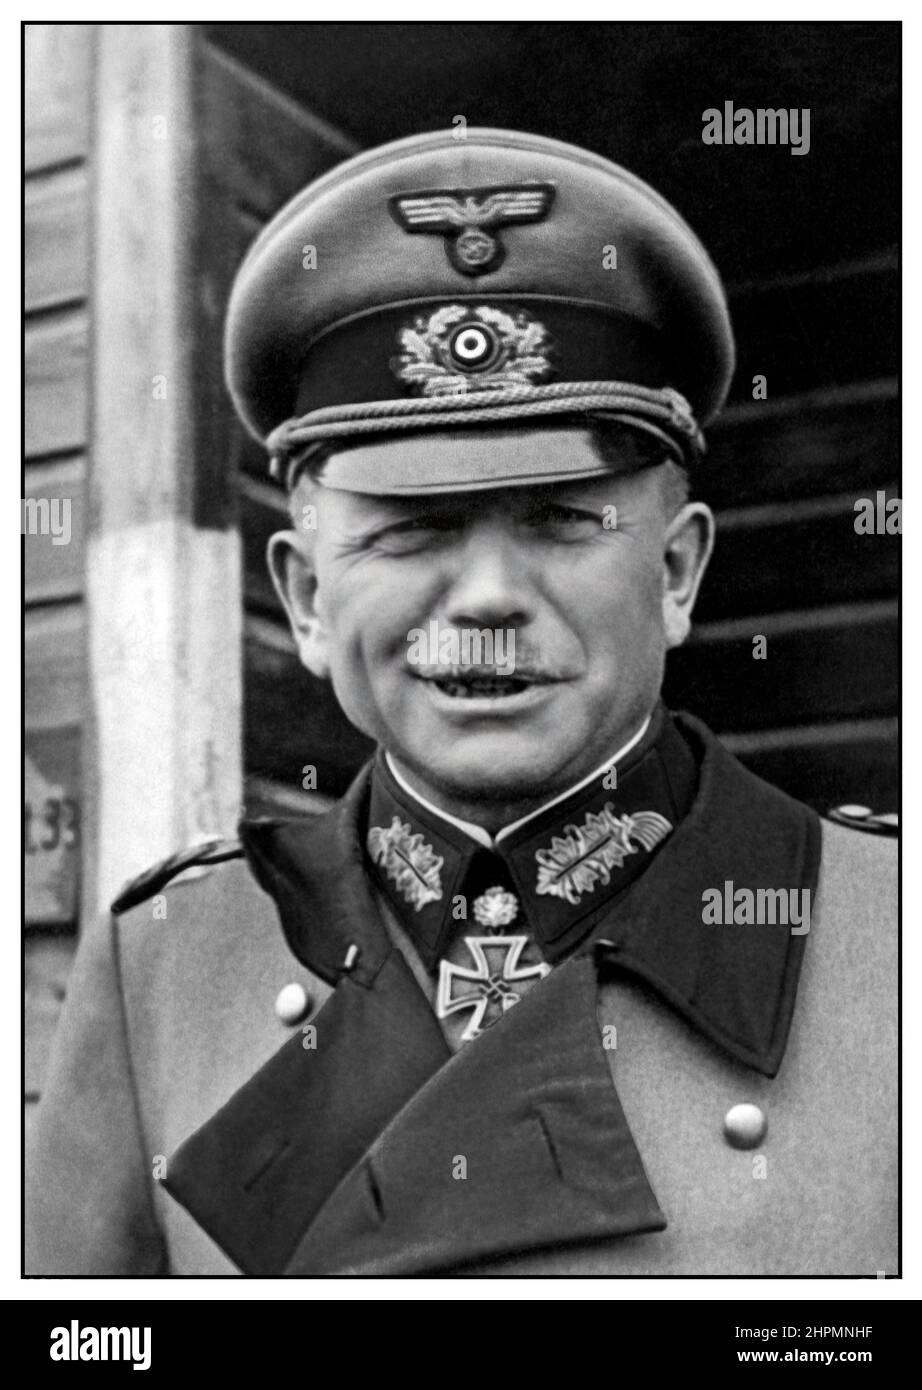 WW2 Ritratto del Reportage nazista Wehrmacht Generale Heinz Guderian 1944 Heinz Wilhelm Guderian fu un generale tedesco durante la seconda guerra mondiale che, dopo la guerra, divenne un memoirista e un autopromotore di successo. Pioniere e sostenitore dell'approccio 'blitzkrieg', ha svolto un ruolo centrale nello sviluppo del concetto di divisione Panzer Foto Stock